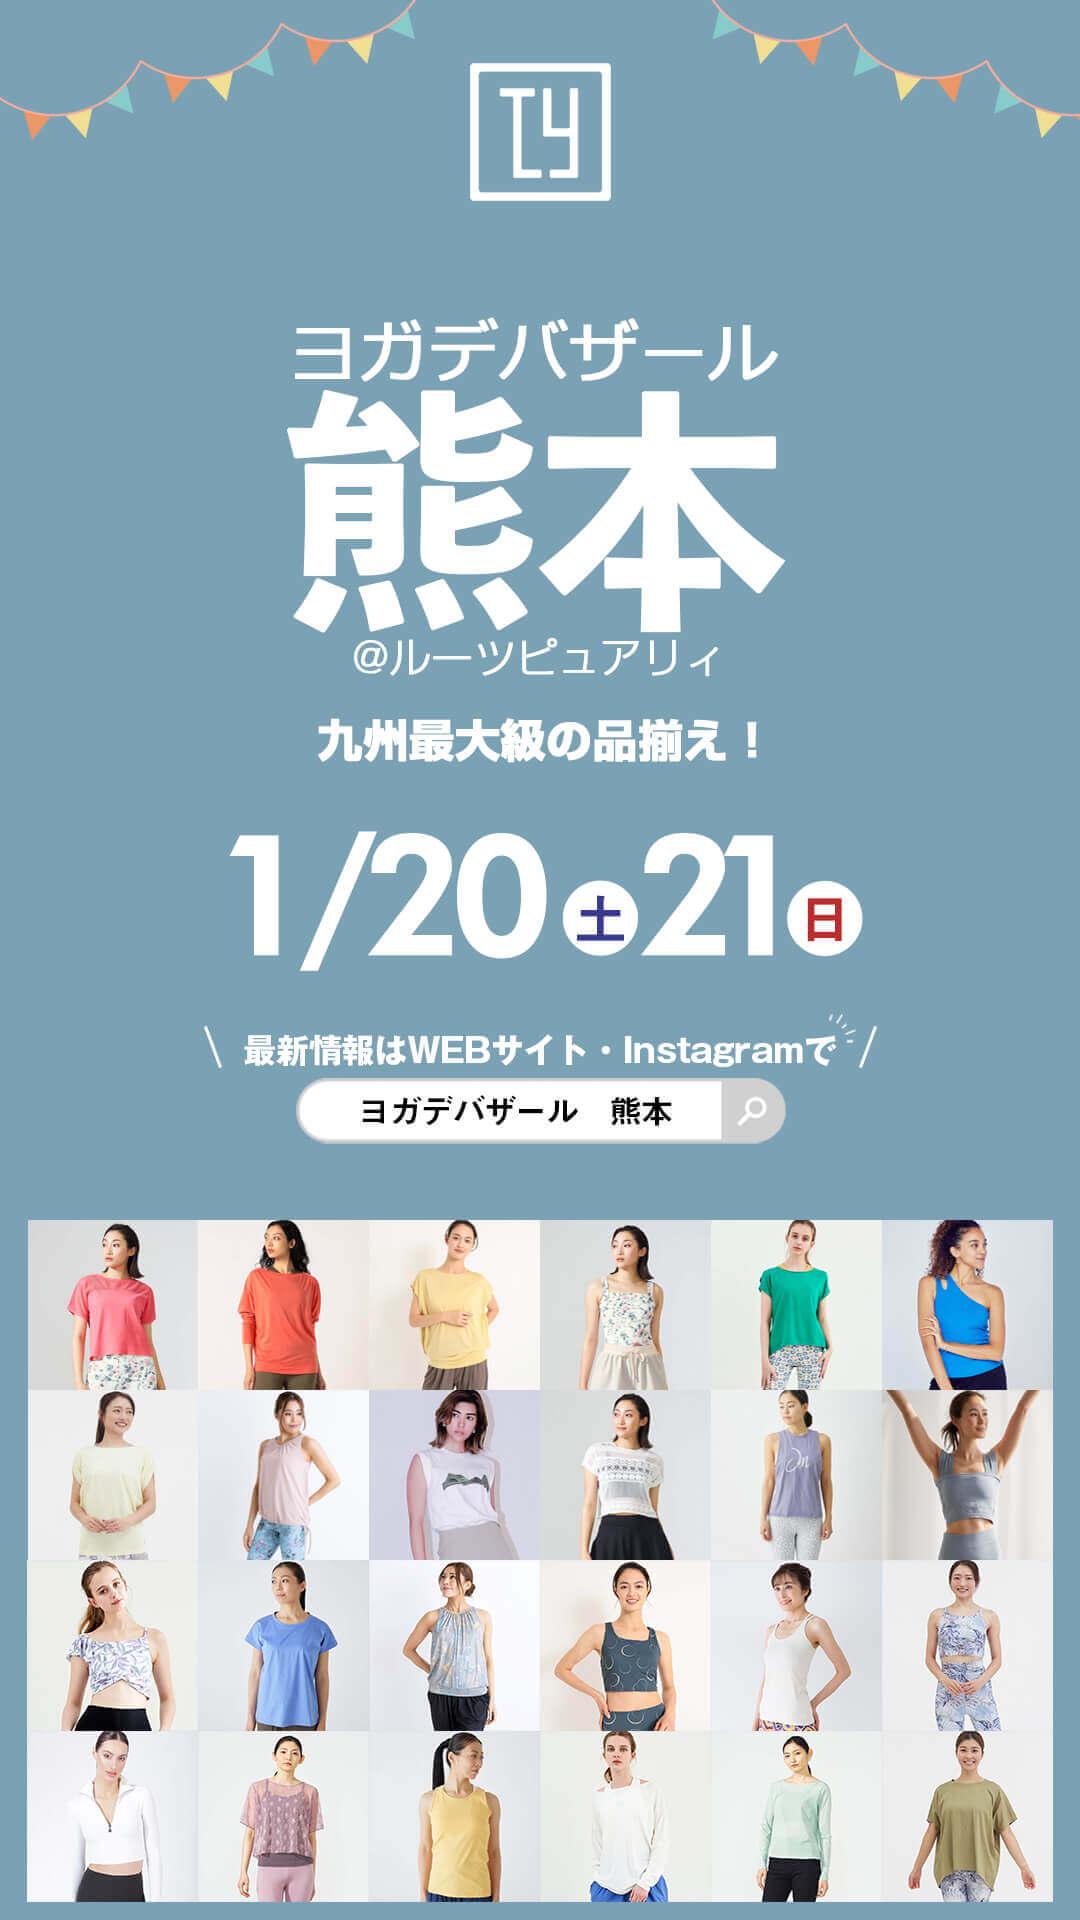 ヨガデバザール 熊本 九州最大級 かわいいオシャレなヨガウェア＆ヨガマット販売イベント